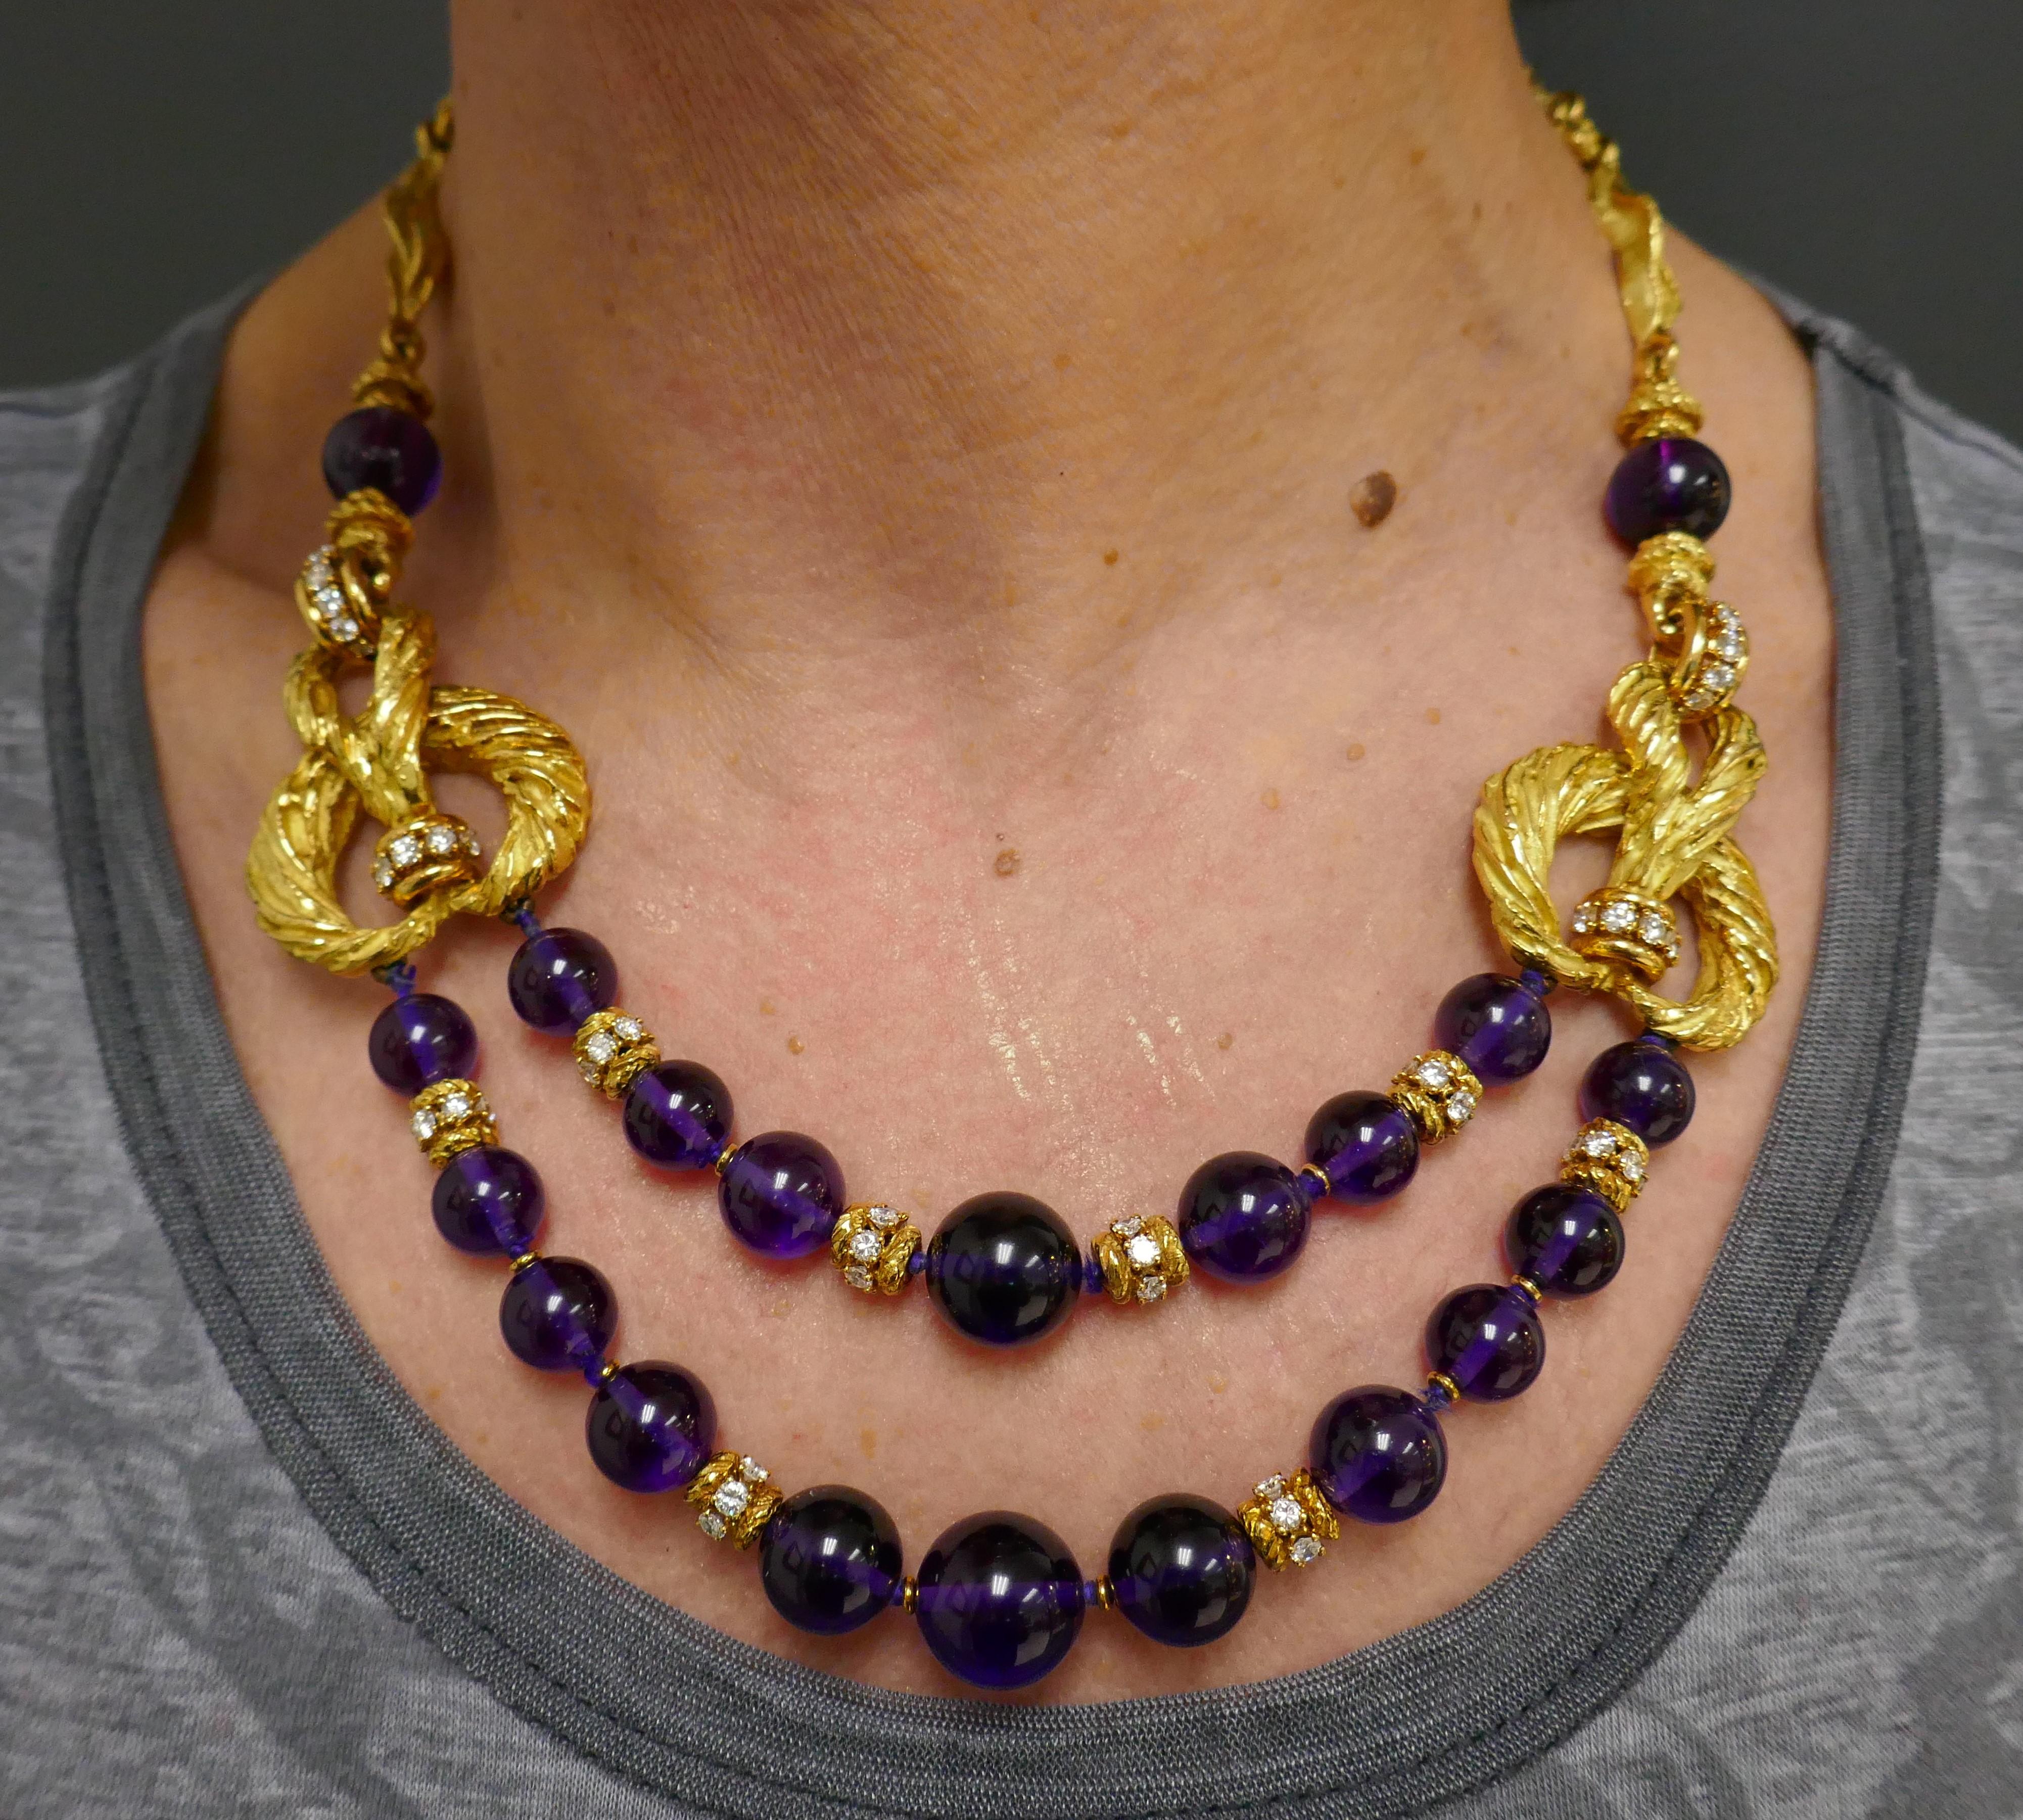 Une spectaculaire parure vintage de Chaumet, en or 18 carats, mettant en valeur l'améthyste et le diamant. L'ensemble se compose d'un collier de perles et d'une paire de boucles d'oreilles. 
Le collier présente un design complexe comprenant des